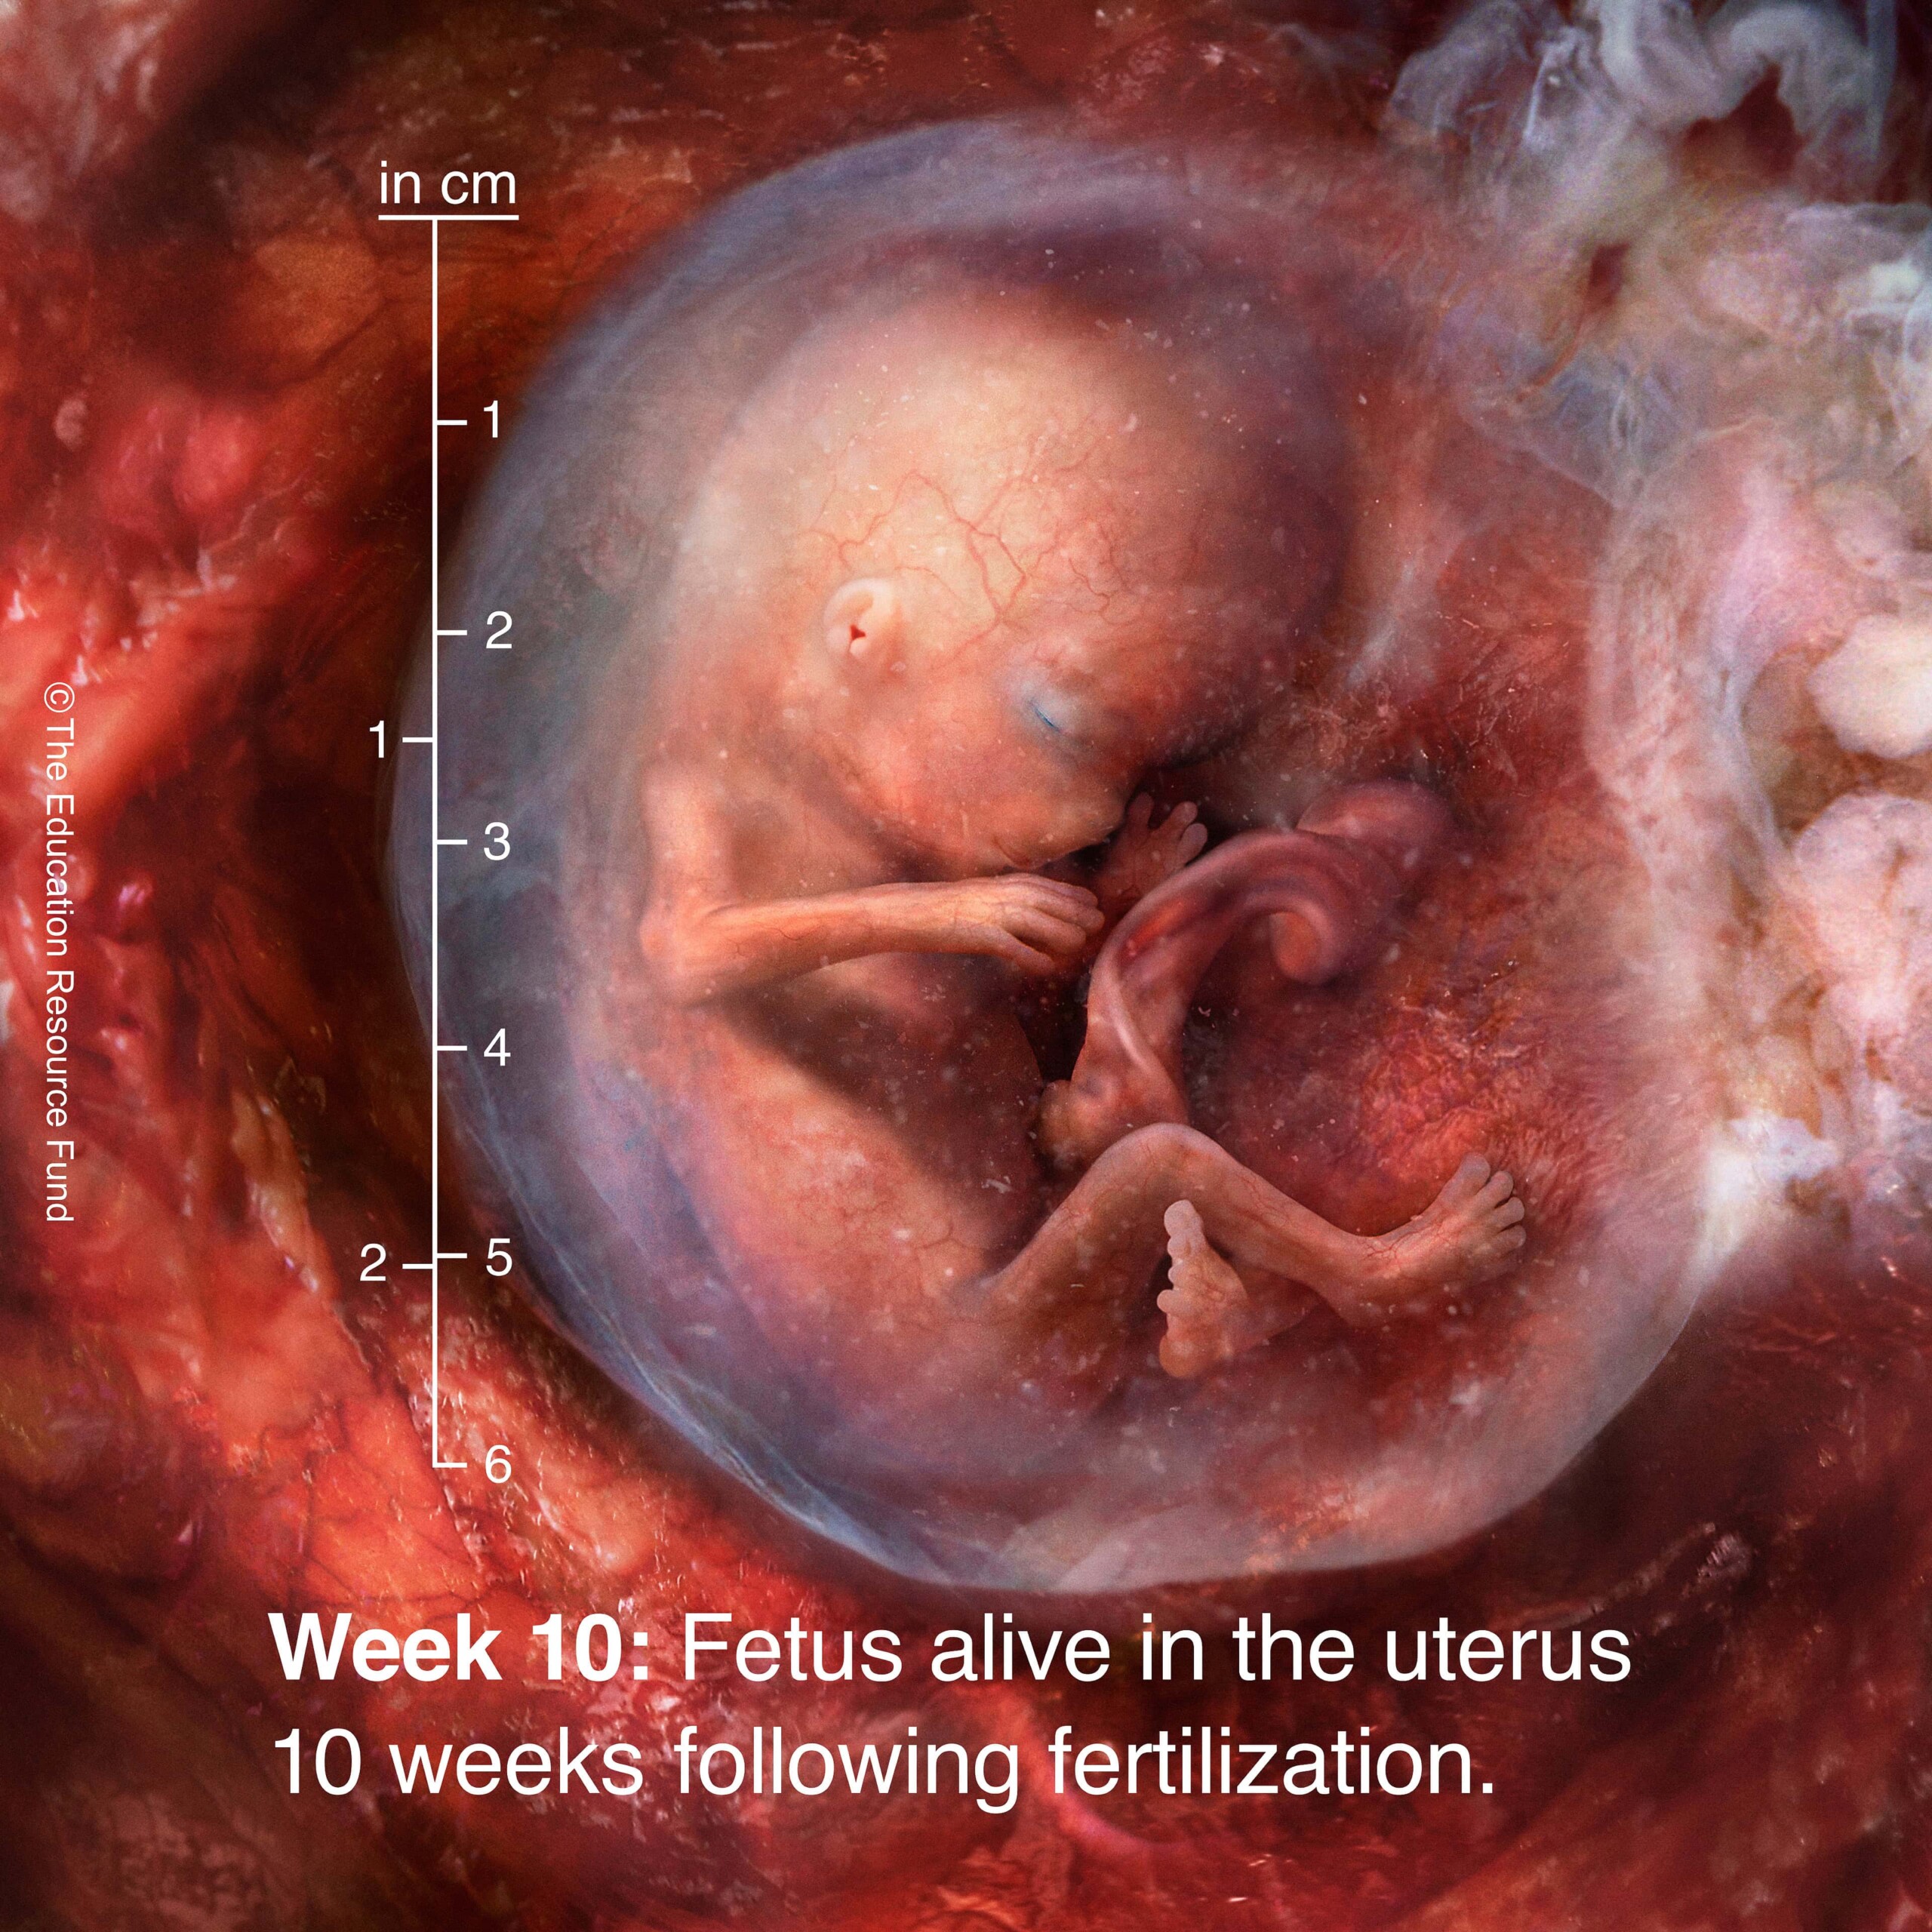 Week 10: Embryo alive in the uterus 10 weeks following fertilization